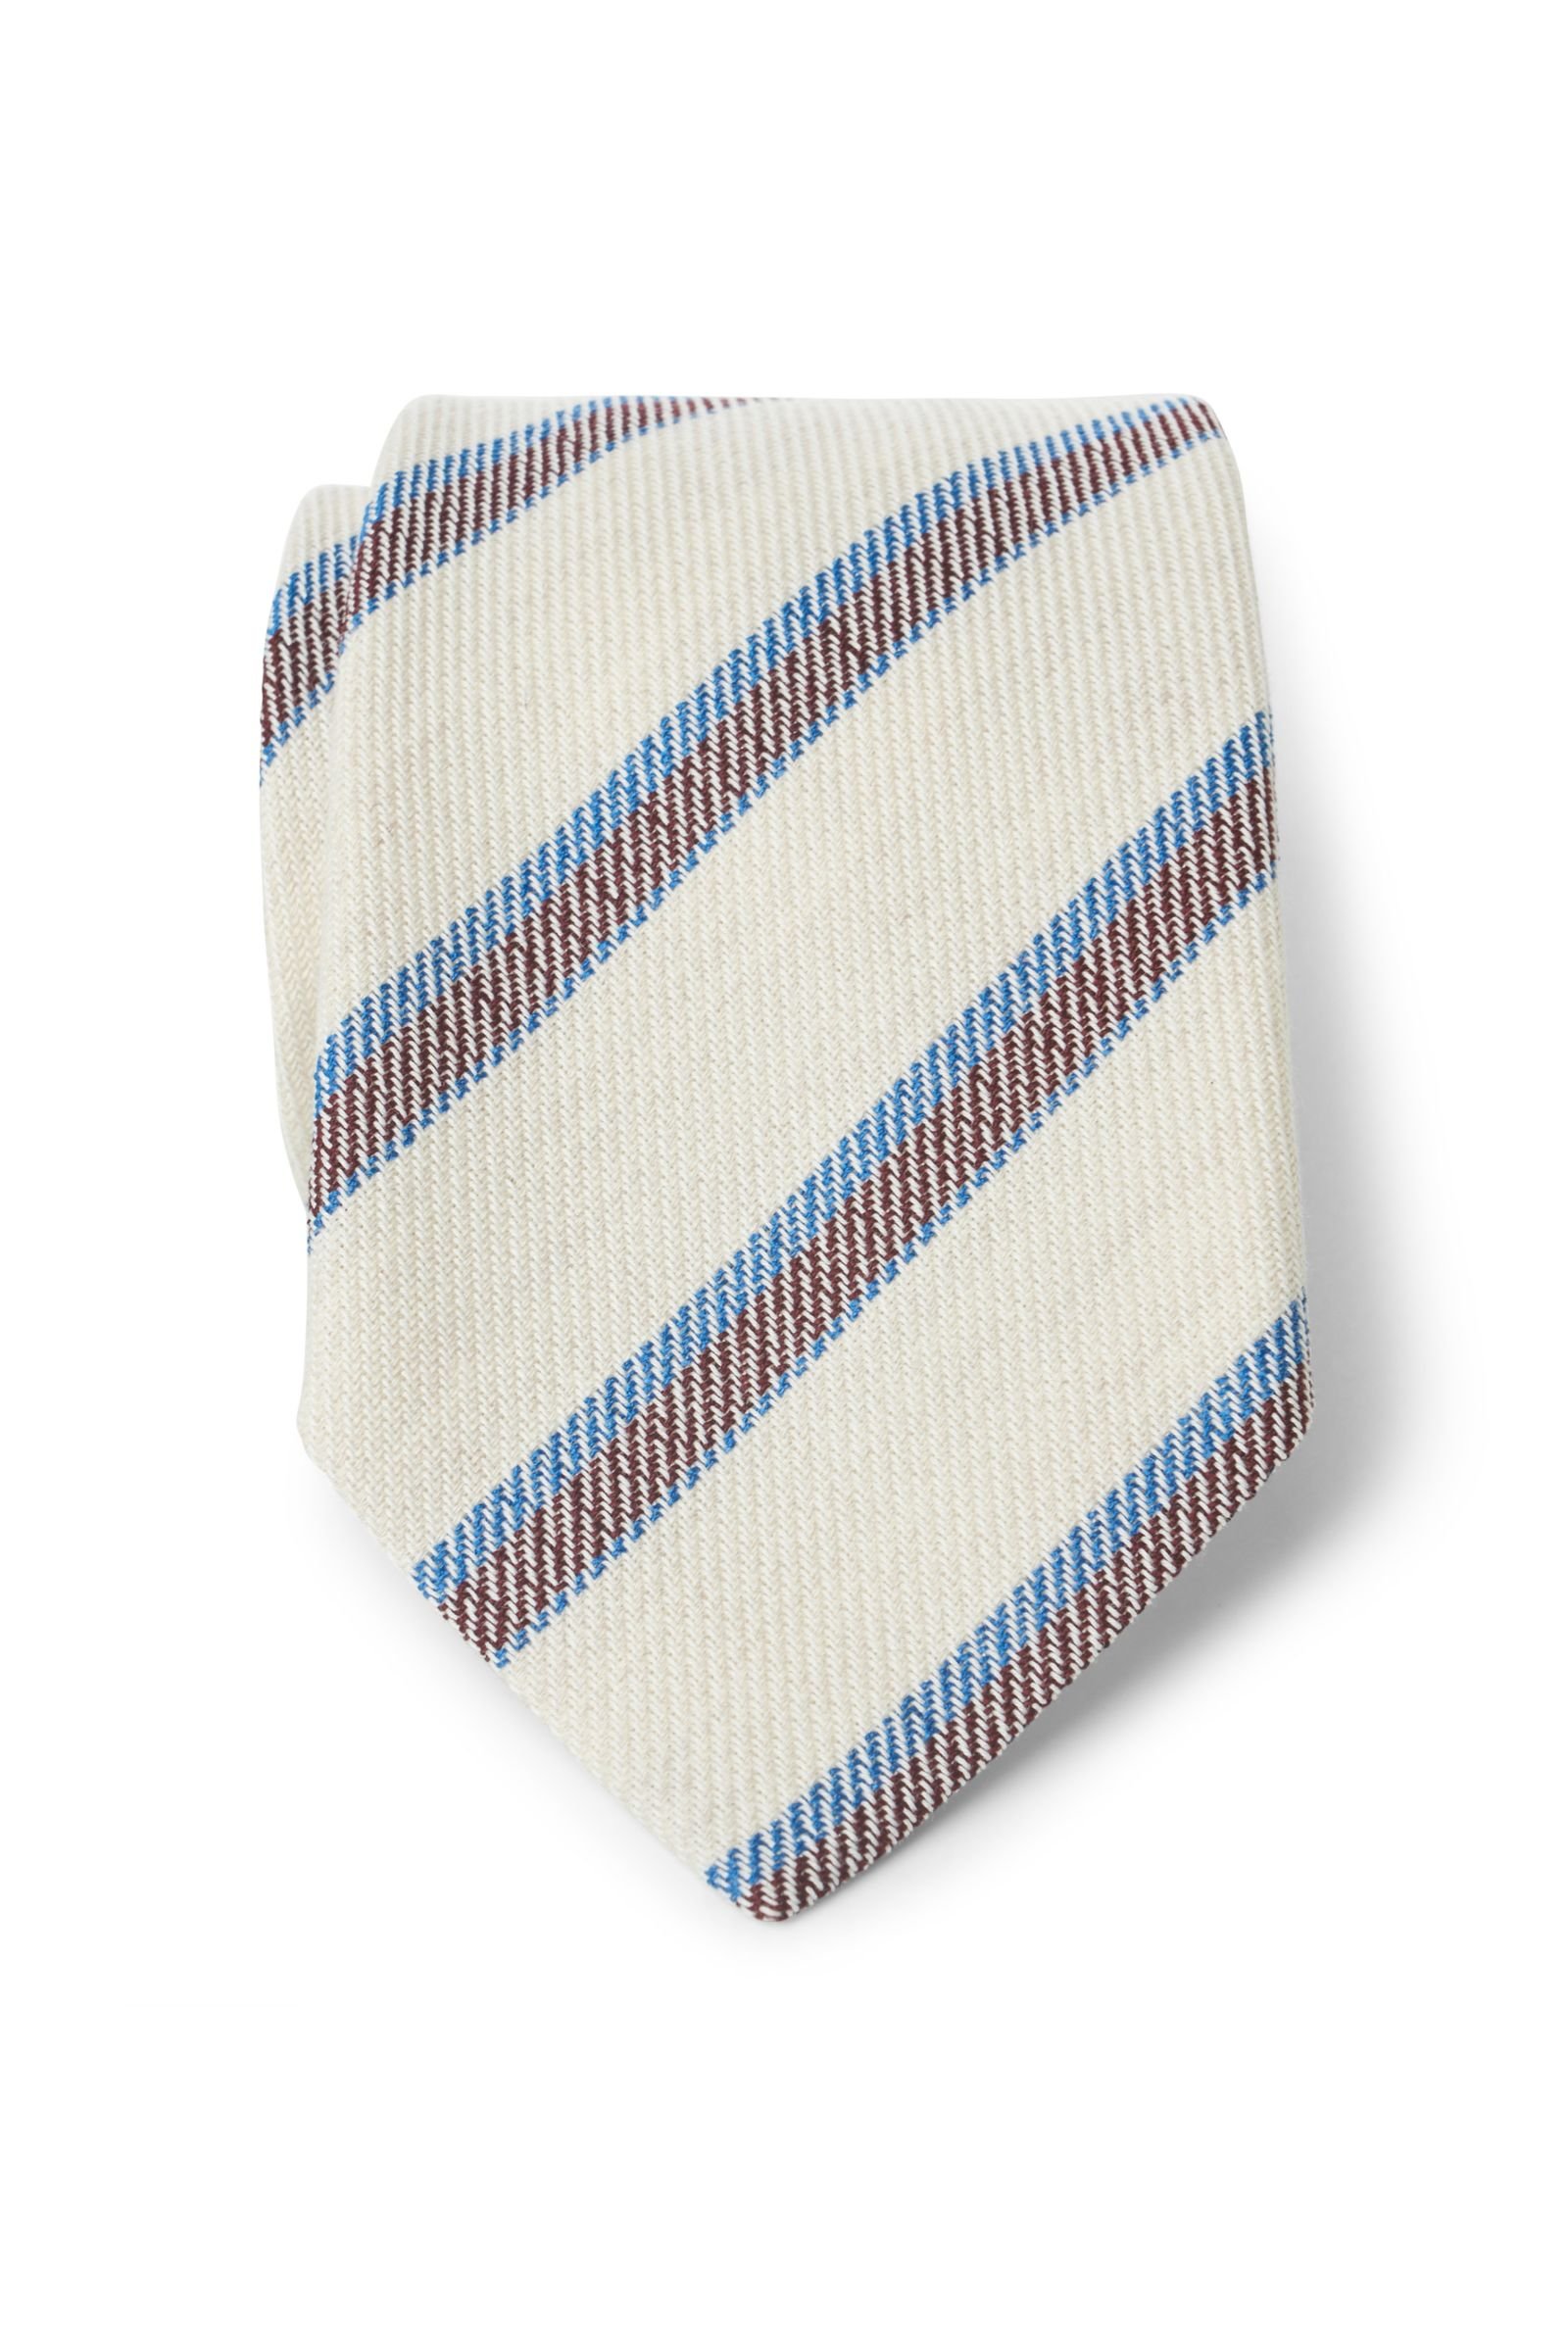 Krawatte creme/braun/blau gestreift